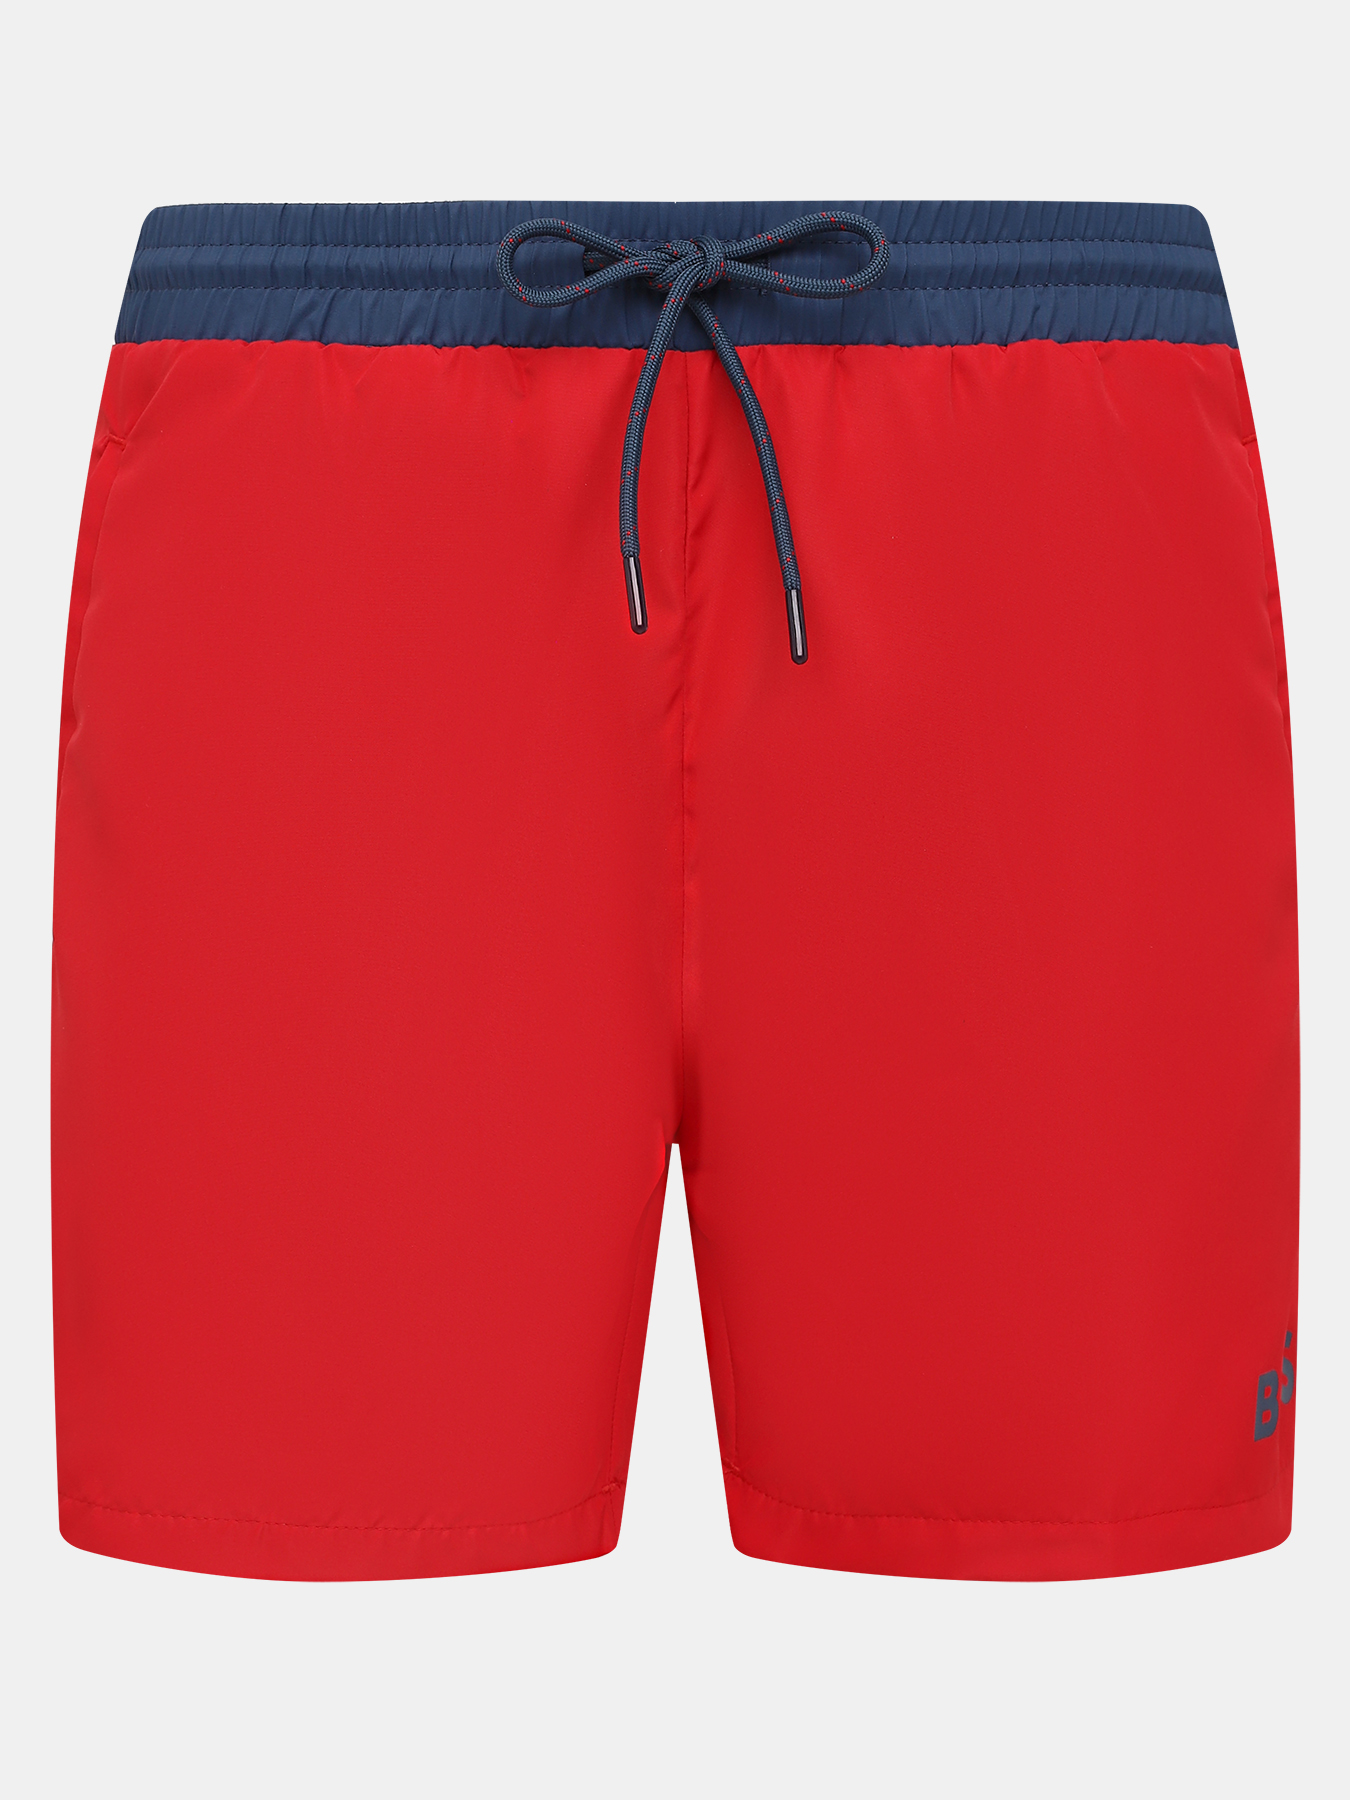 Плавательные шорты Starfish BOSS 416767-046, цвет красный, размер 54 - фото 1